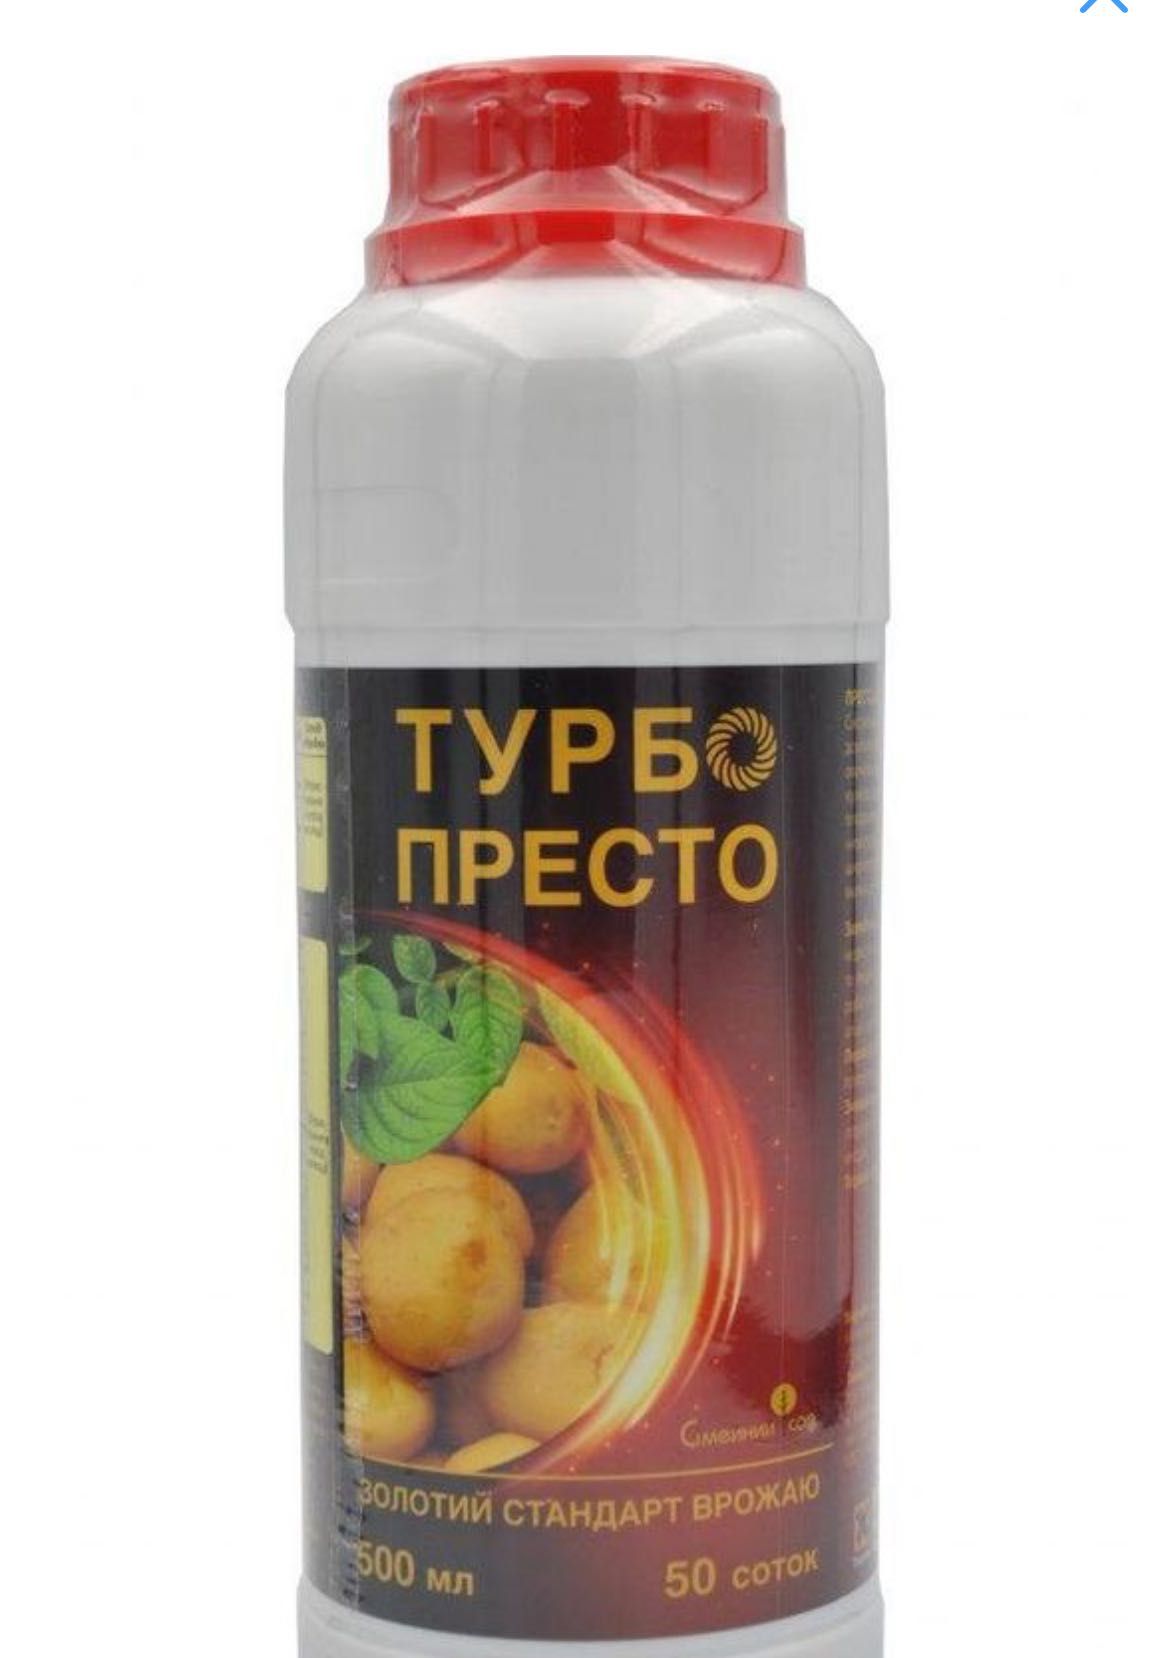 Turbo Presto insecticid